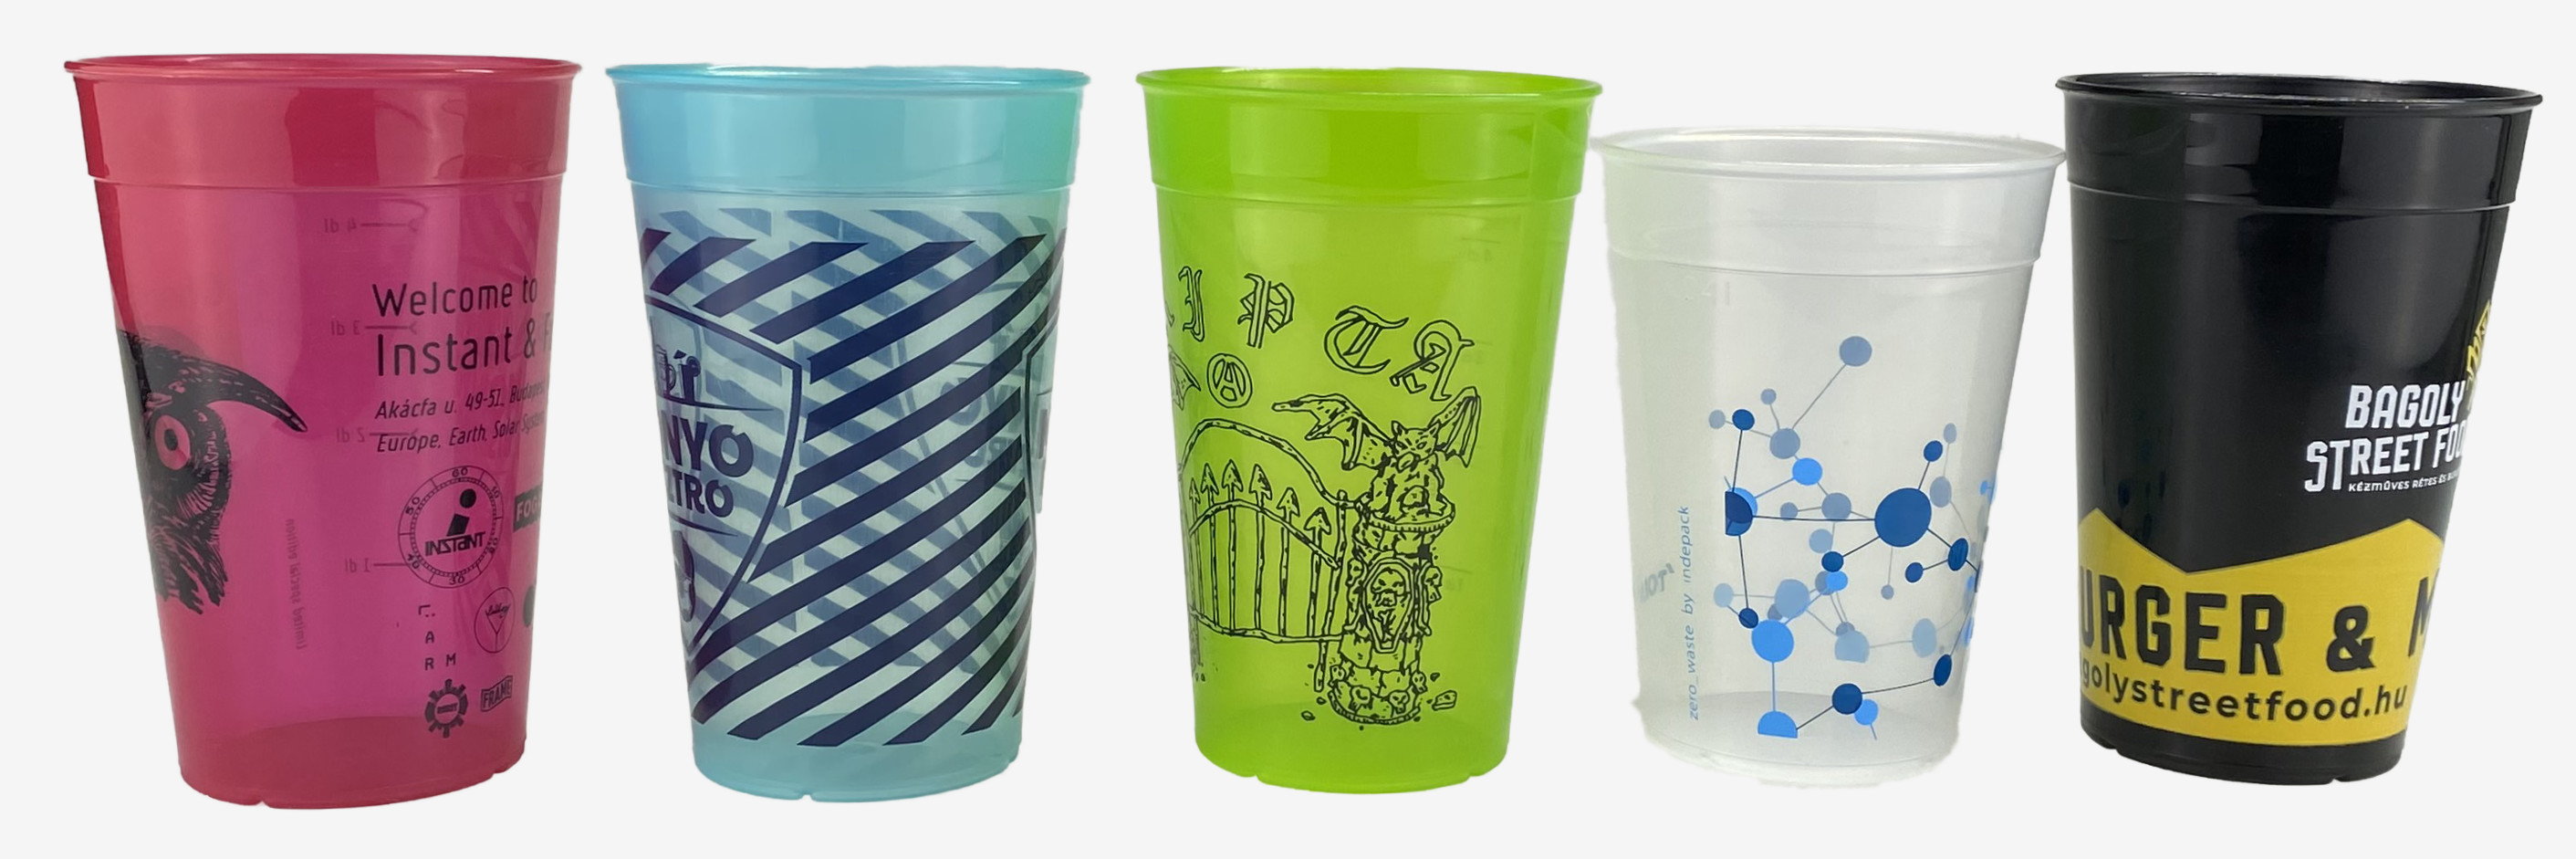 Egyedileg logózott műanyag újrapohár, fesztivál pohár